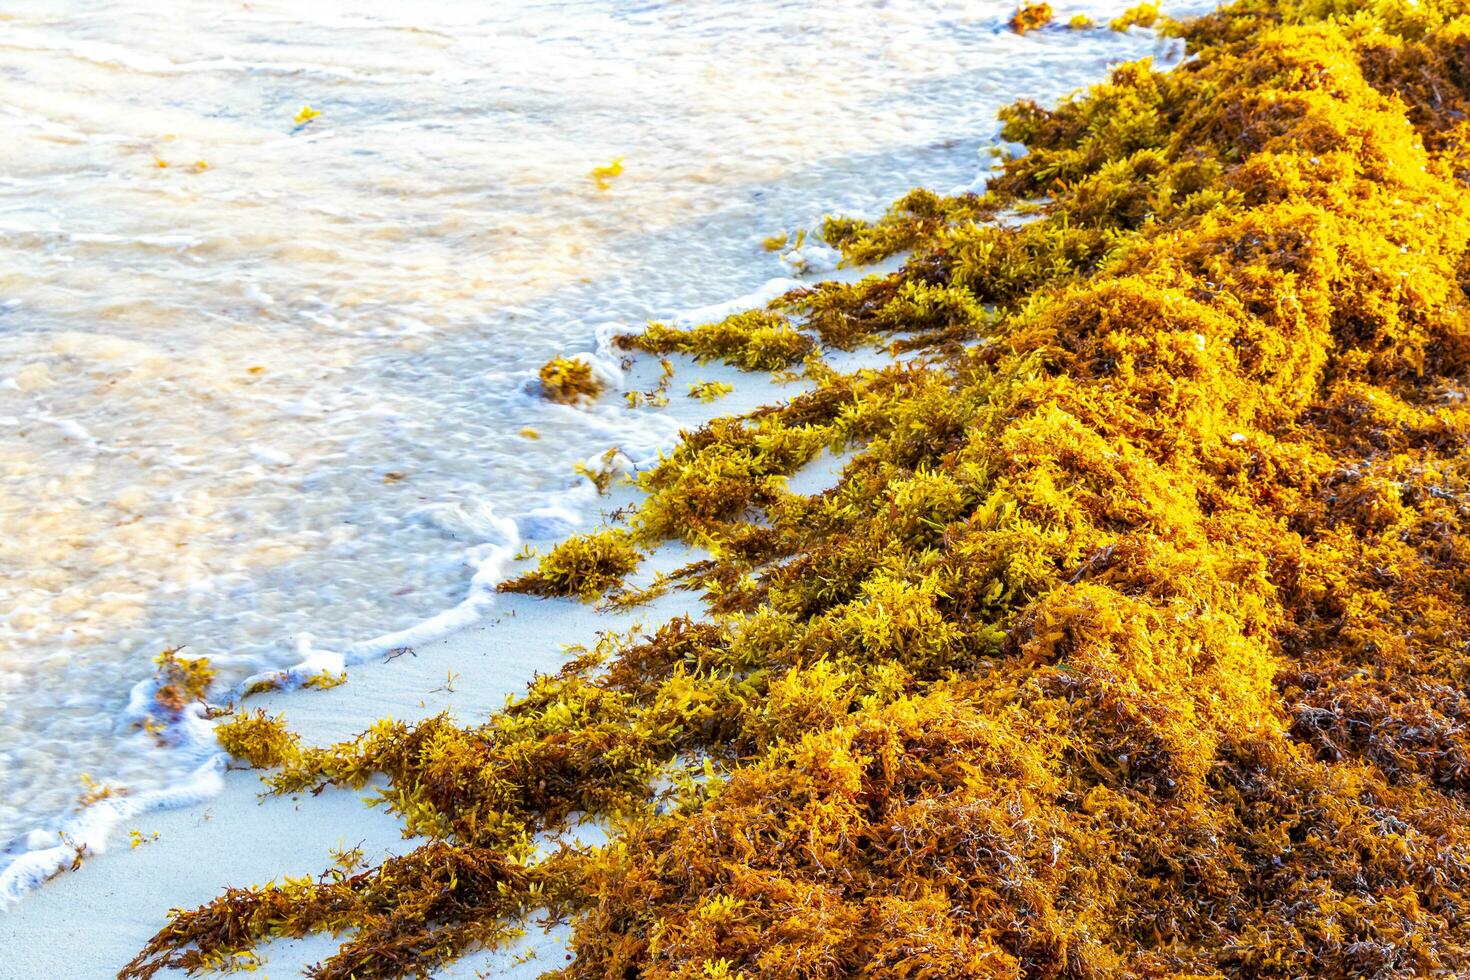 bellissimo caraibico spiaggia totalmente sporco sporco cattiva alga marina problema Messico. foto